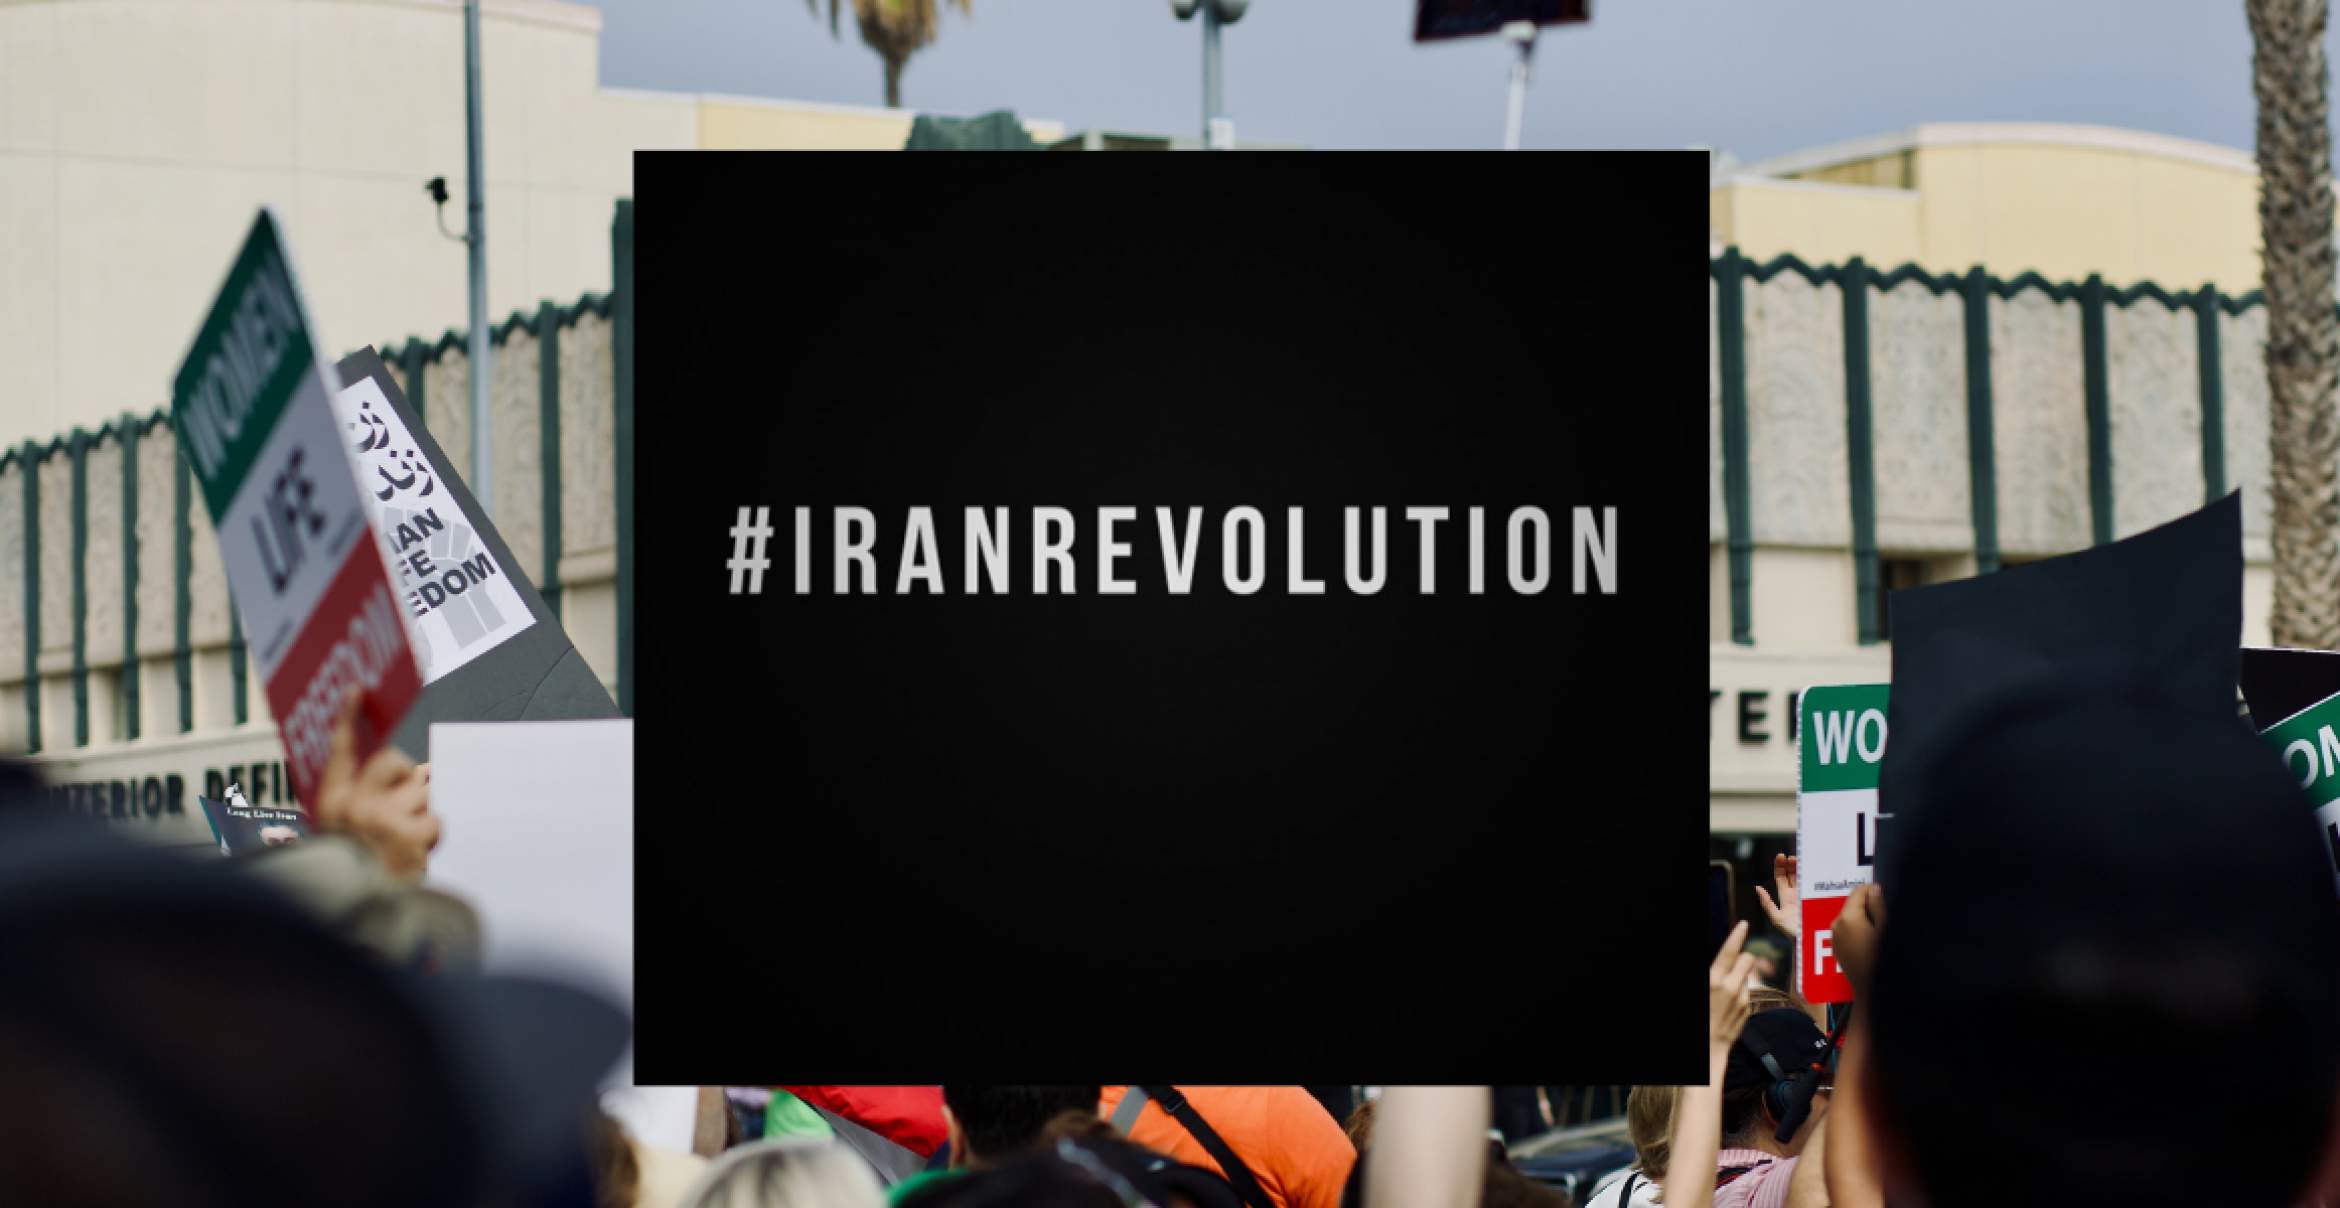 #IranRevolution: Joko und Klaas schenken ihre Instagram-Accounts Aktivistinnen aus Iran